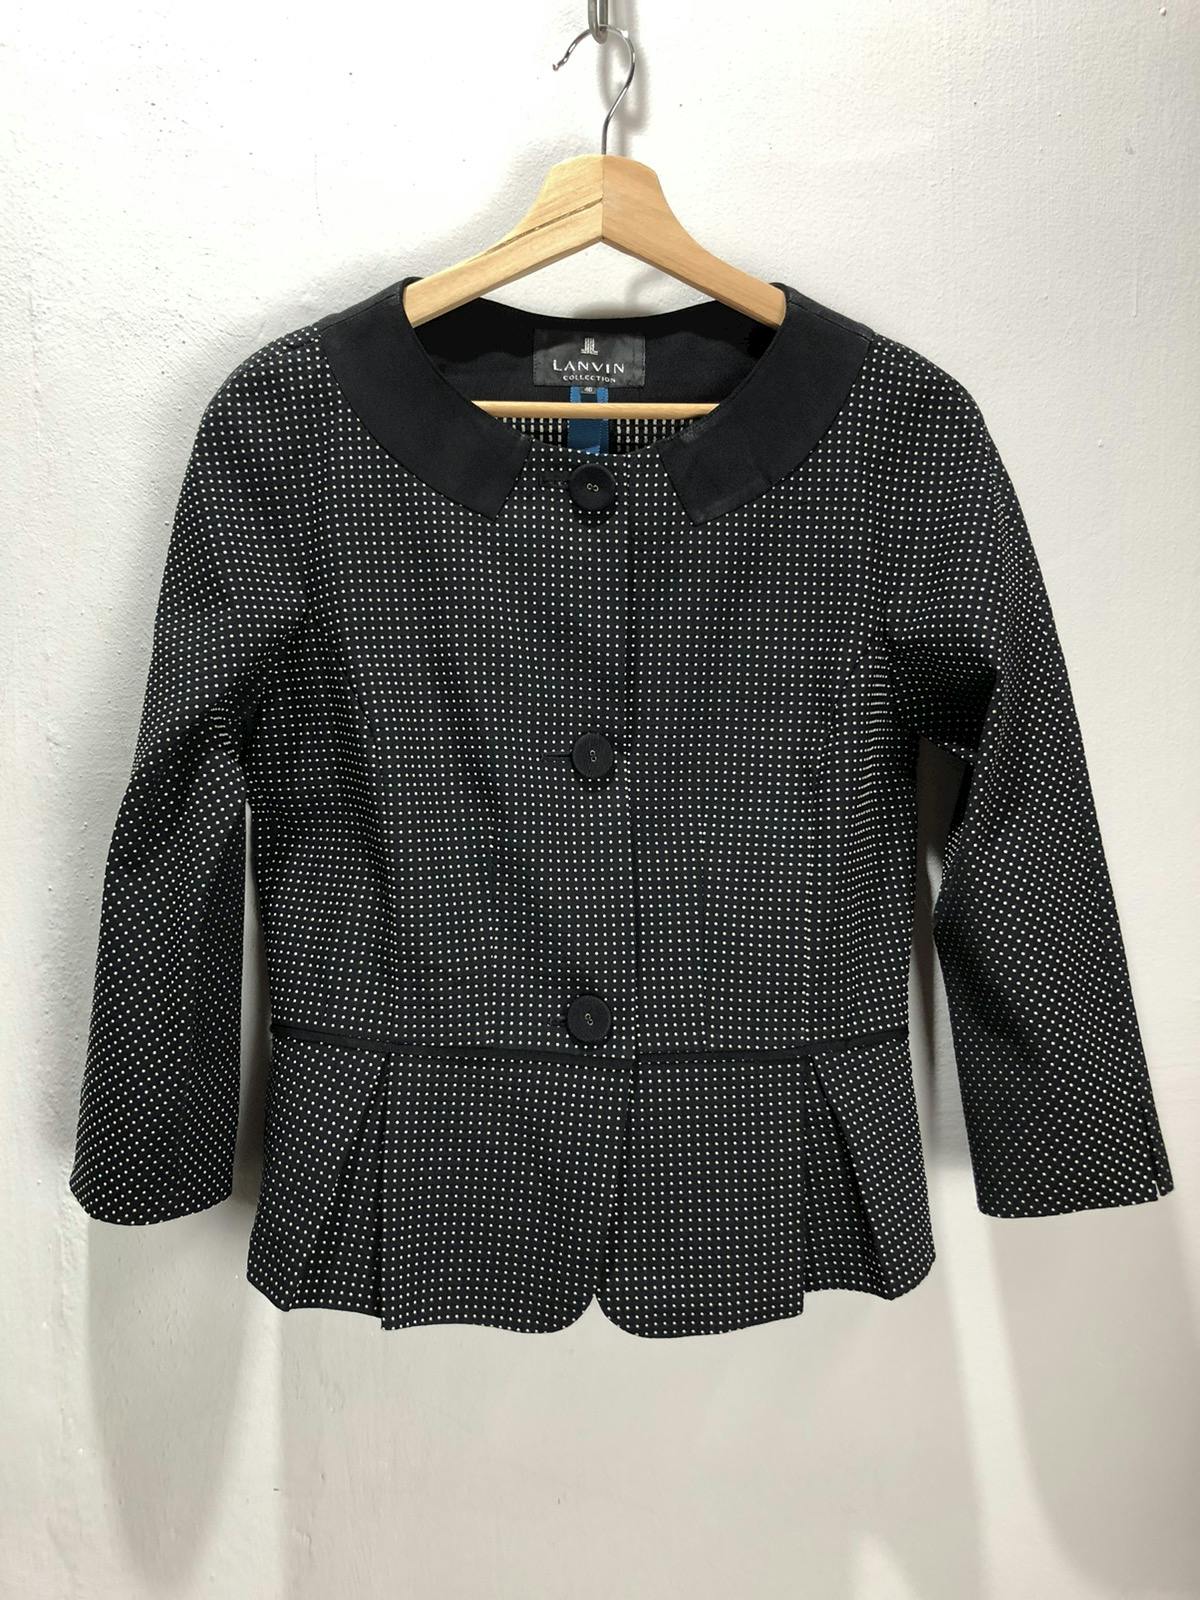 Lanvin blazer/jacket nice design - 1